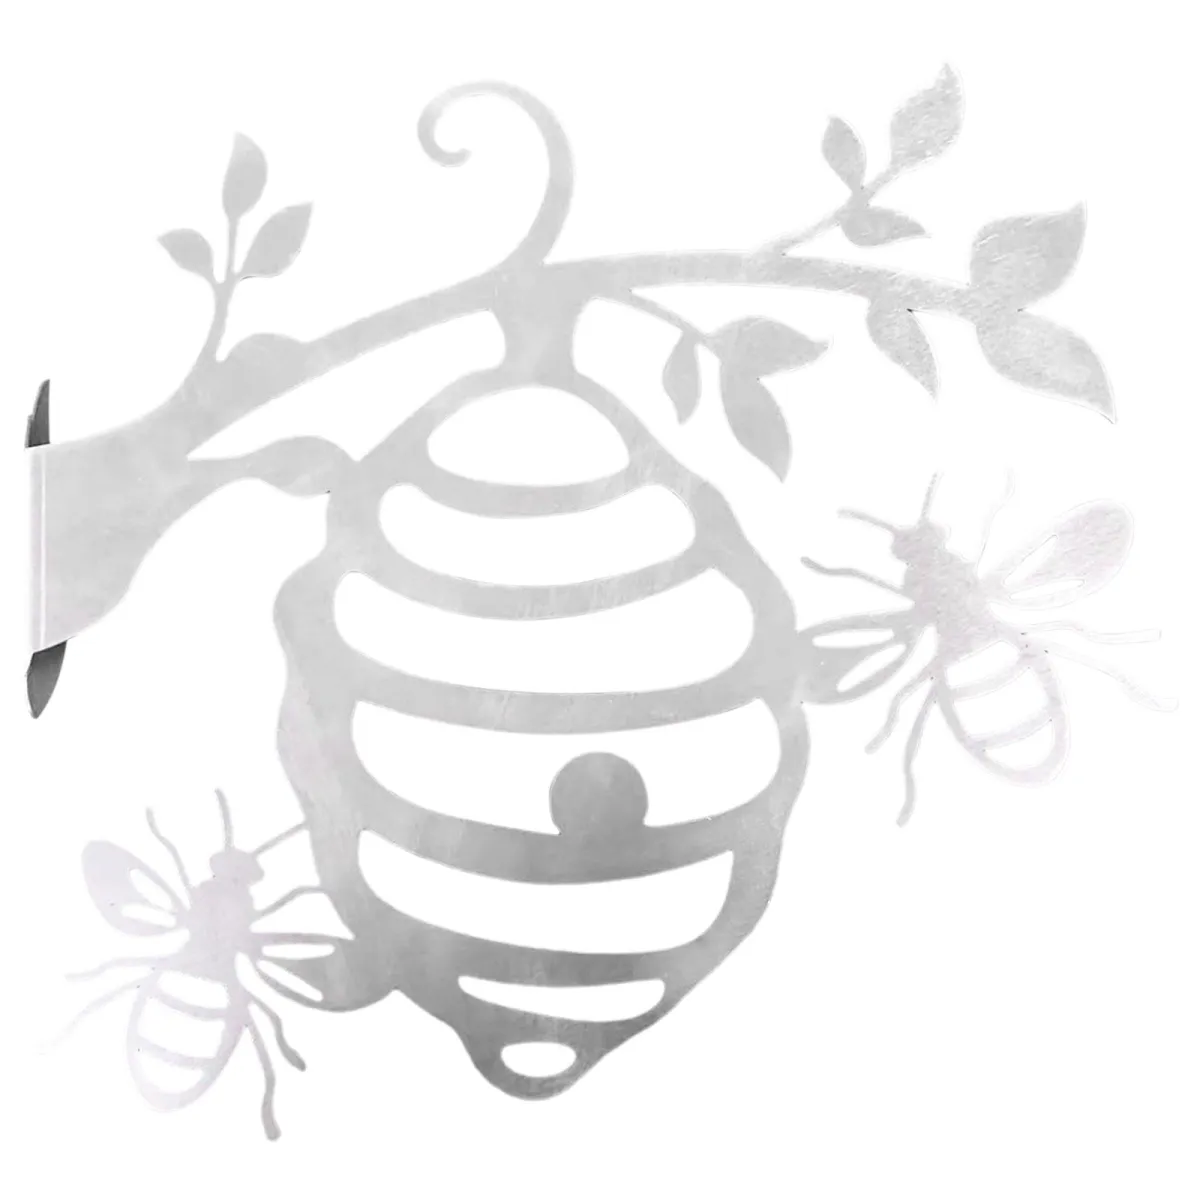 Chia sẻ với hơn 69 về hình vẽ tổ ong hay nhất  coedocomvn